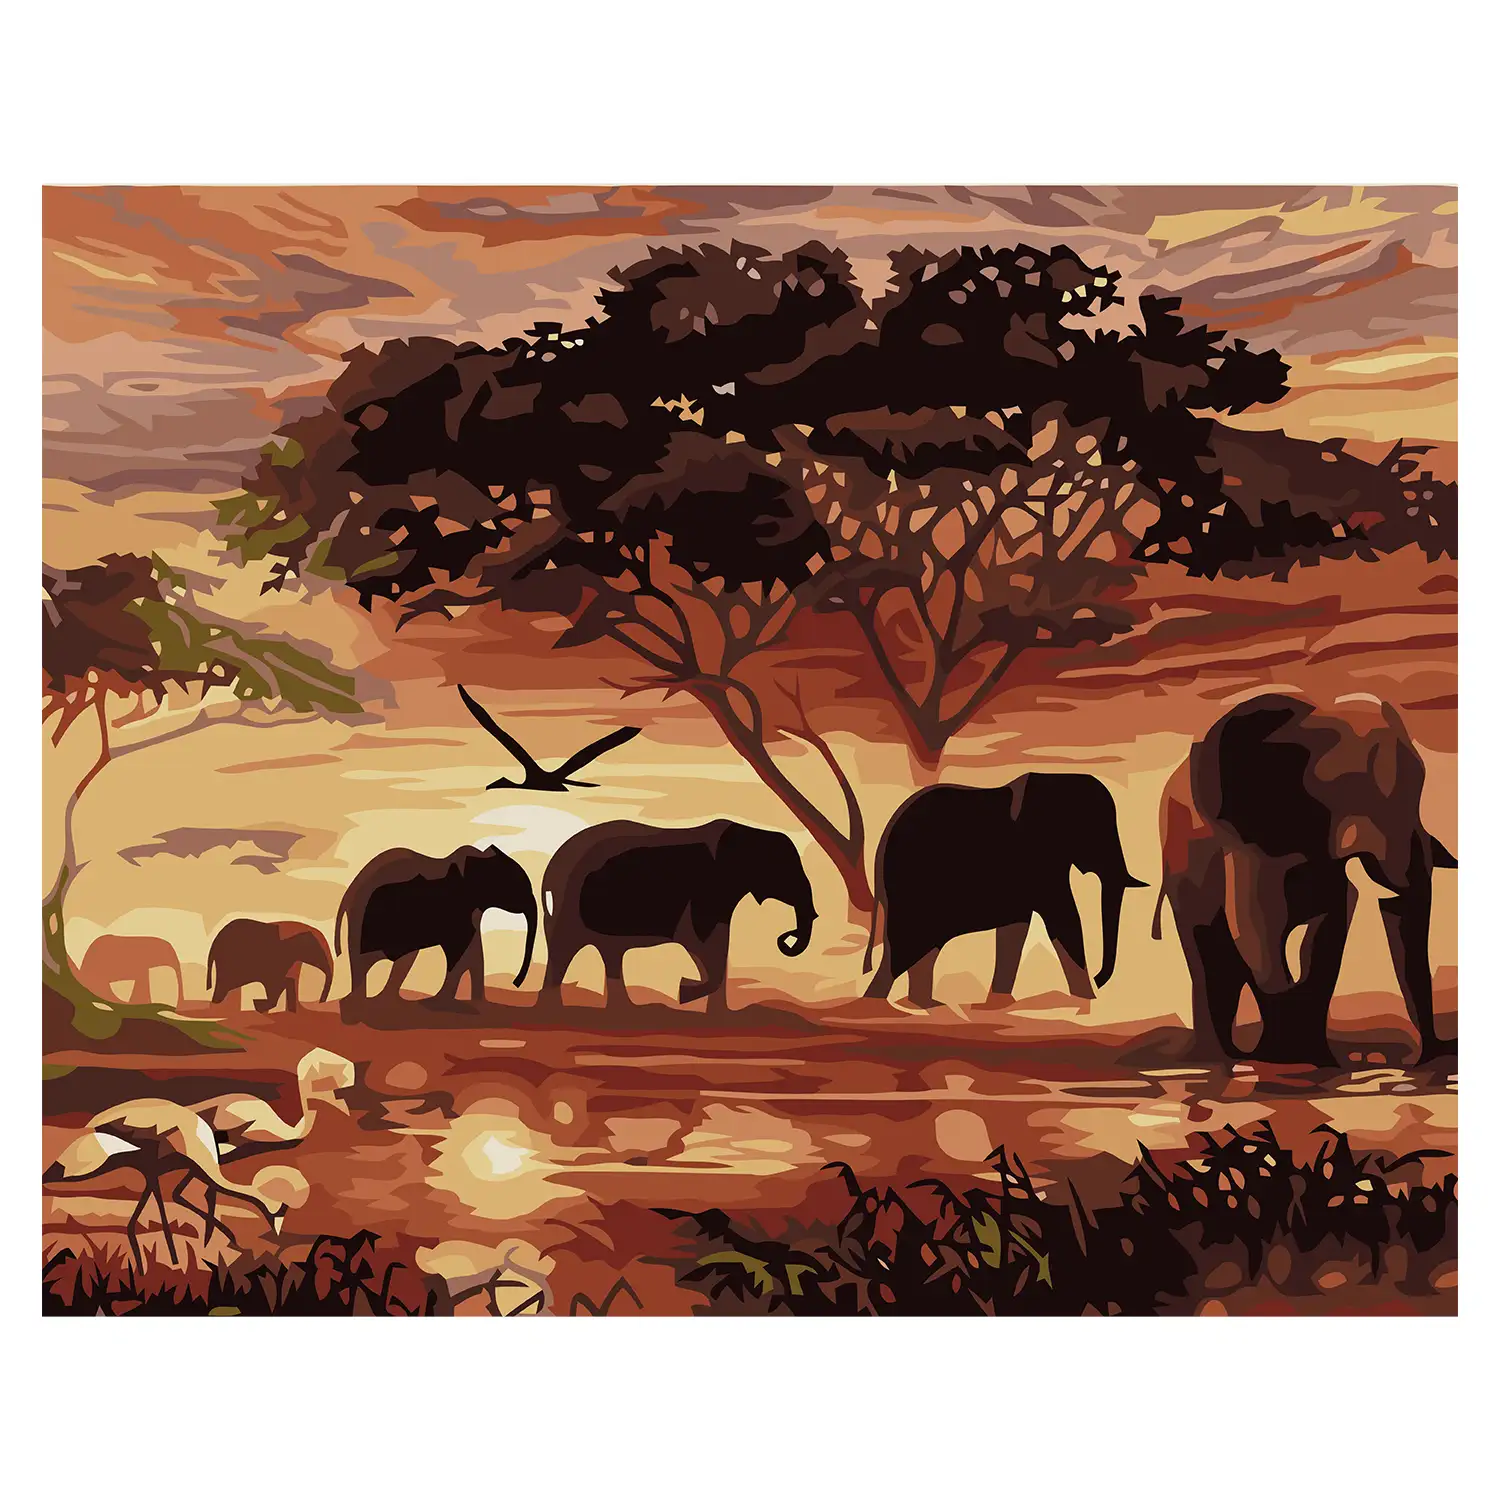 Lienzo con dibujo para pintar con números, de 40x50cm. Diseño elefantes africanos. Incluye pinceles y pinturas necesarias.